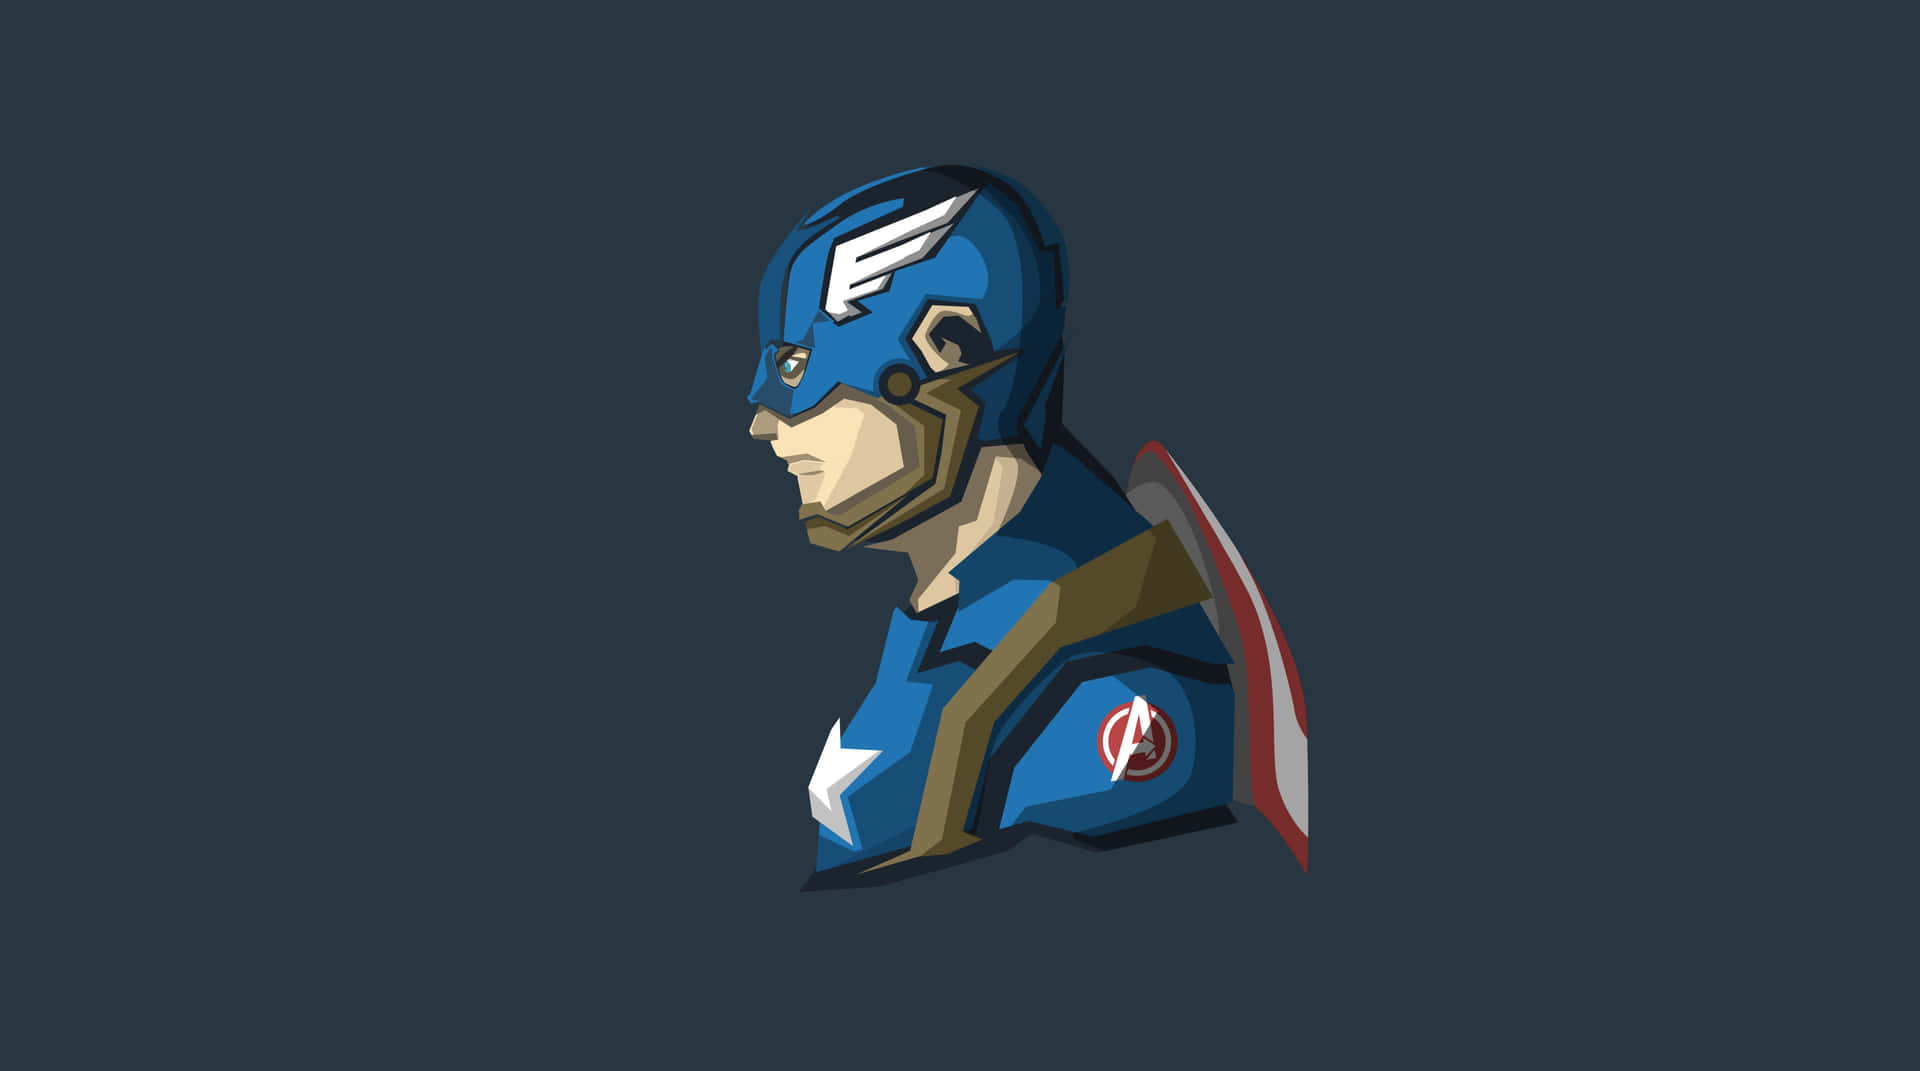 Marvelsseriefigur Captain America Som Bakgrundsbild Till Datorn Eller Mobilen.